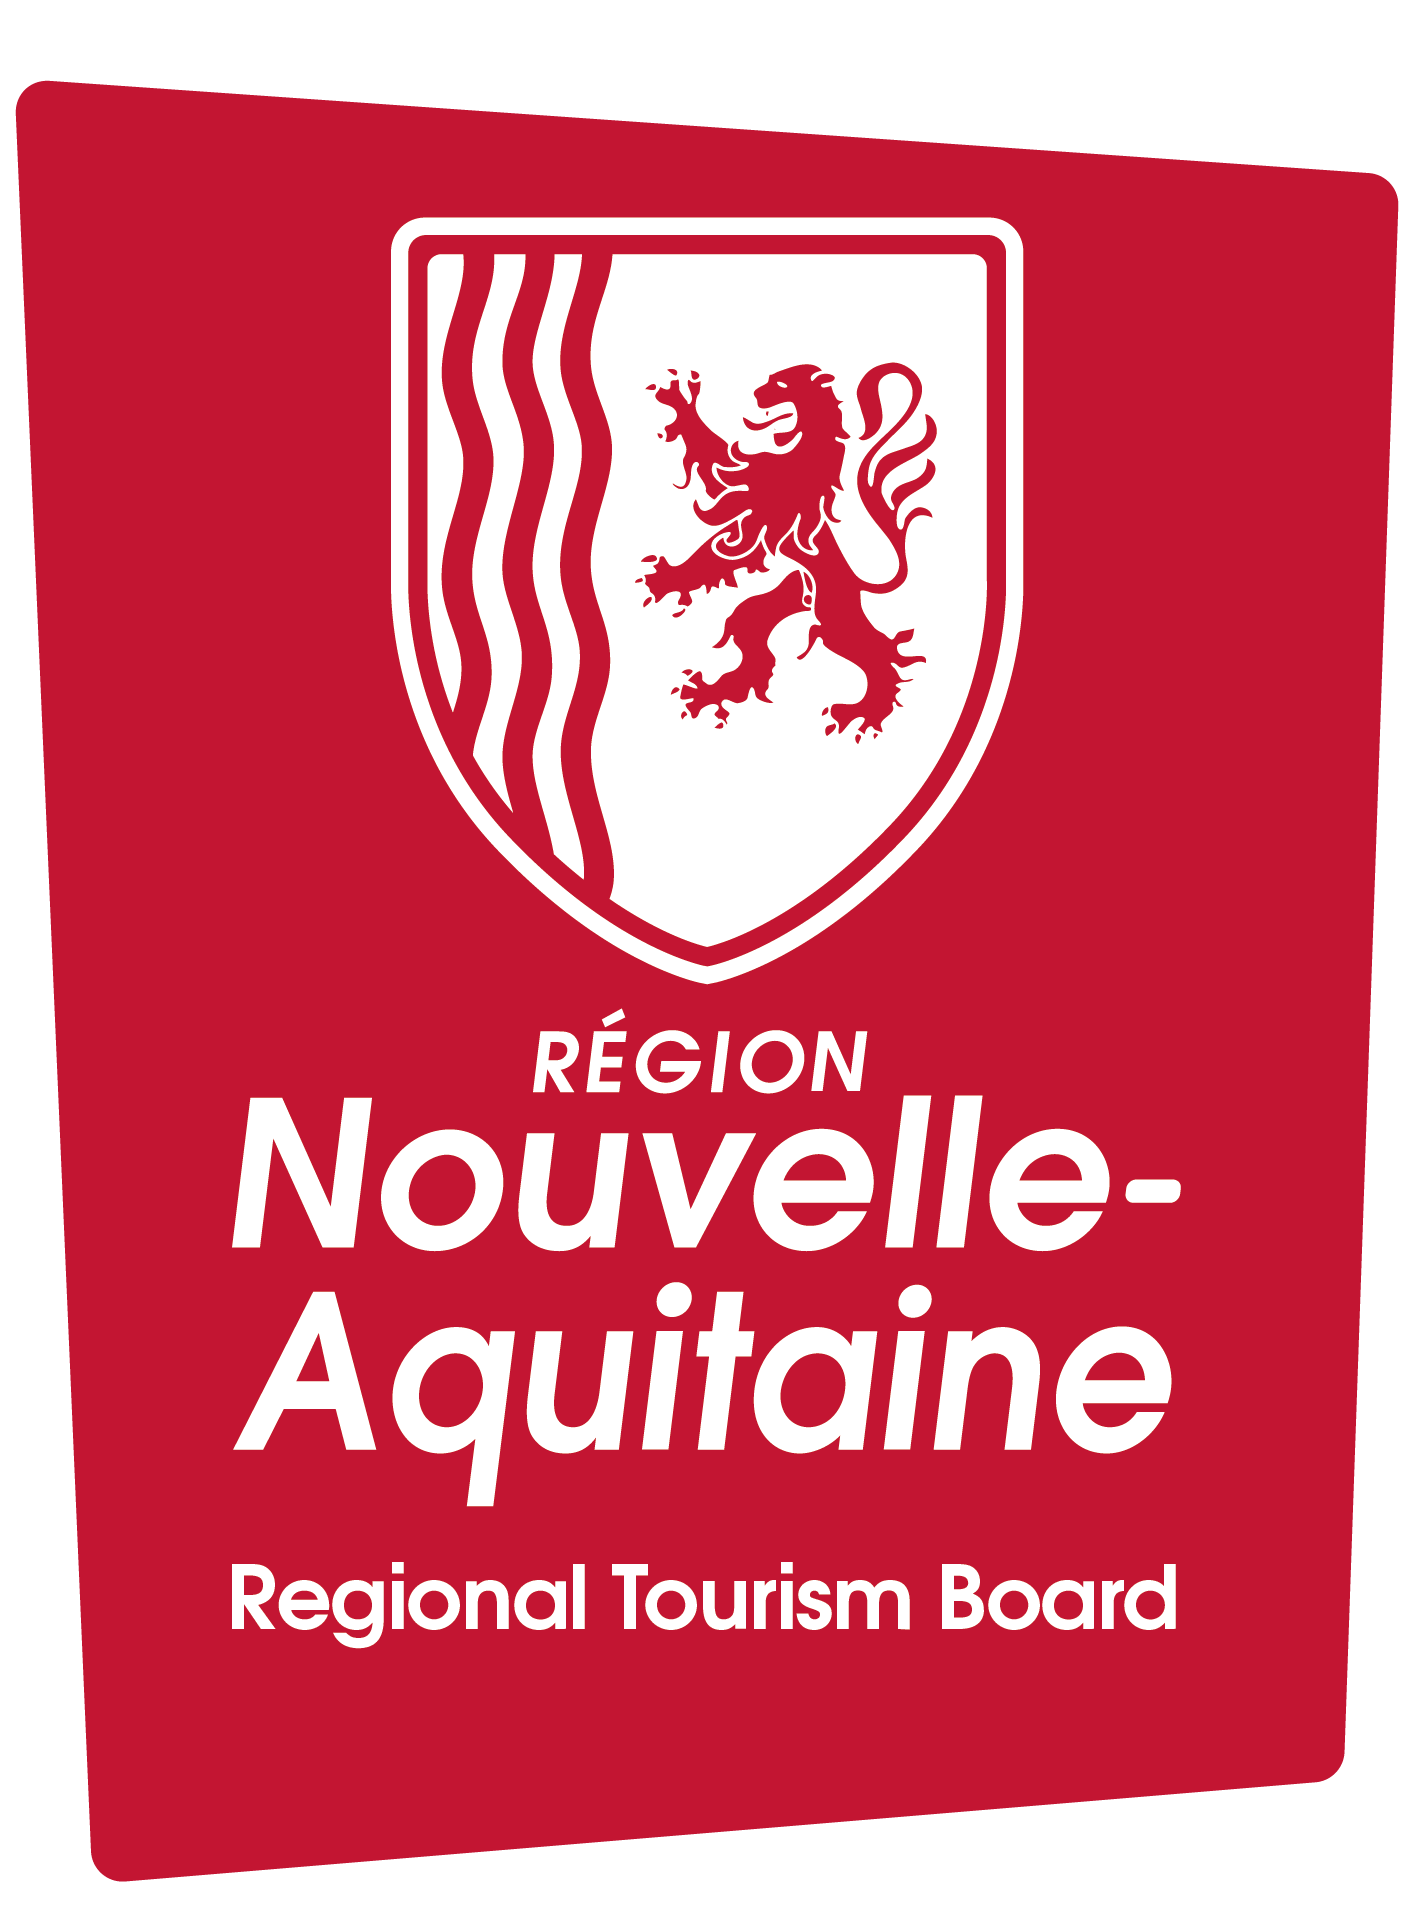 Nouvelle-Aquitaine Tourism